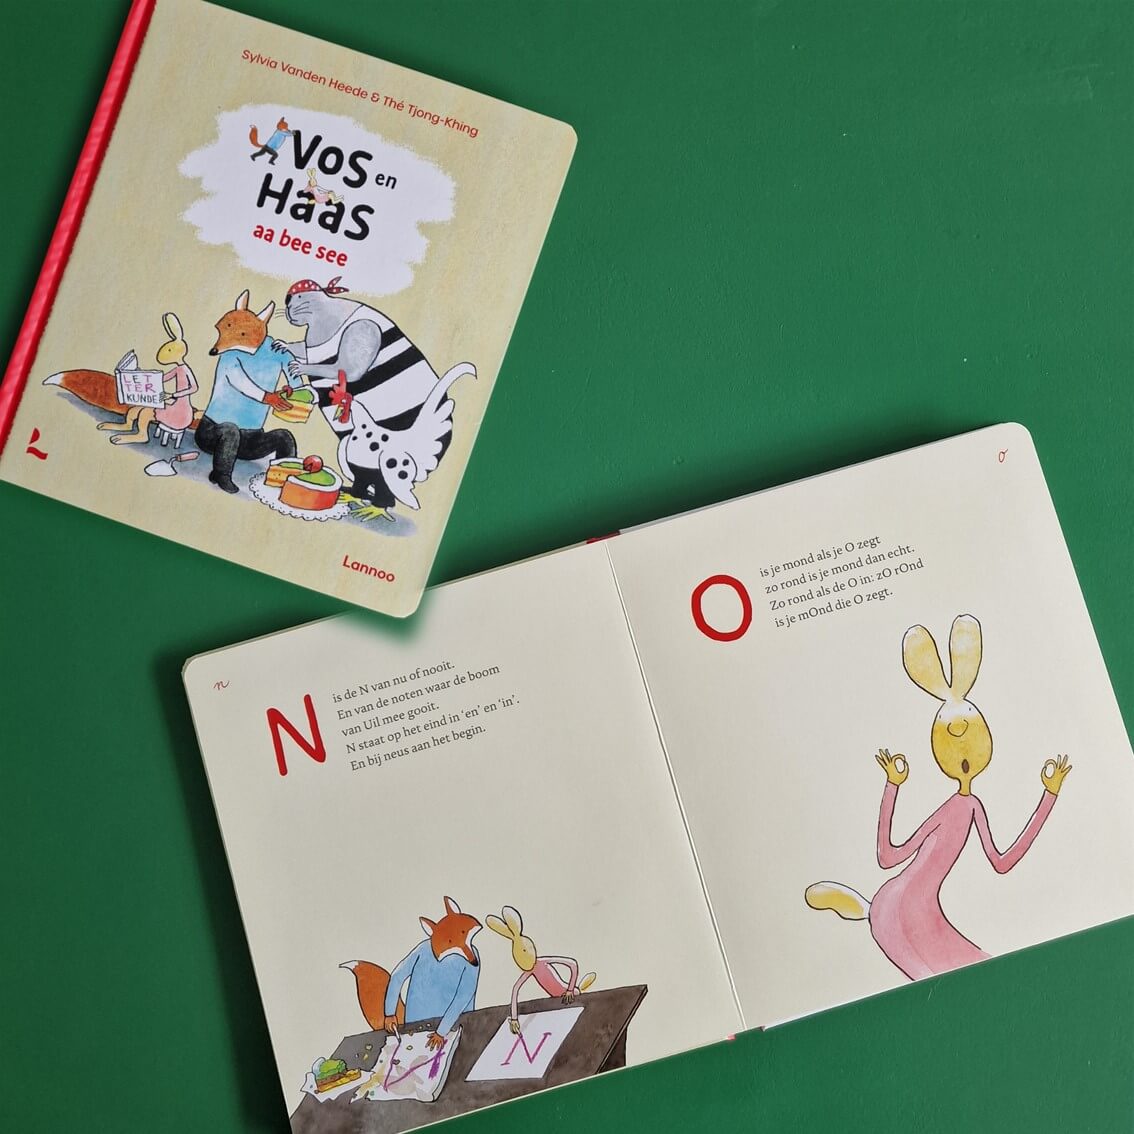 Wij zijn fan van Vos en Haas. Voor peuters en kleuters is er een leuk kartonboek: Vos en Haas Aa Bee See. Hierin maken ze kennis met de letters van het alfabet. Iedere letter heeft een leuk speels rijmpje en een mooie tekening.